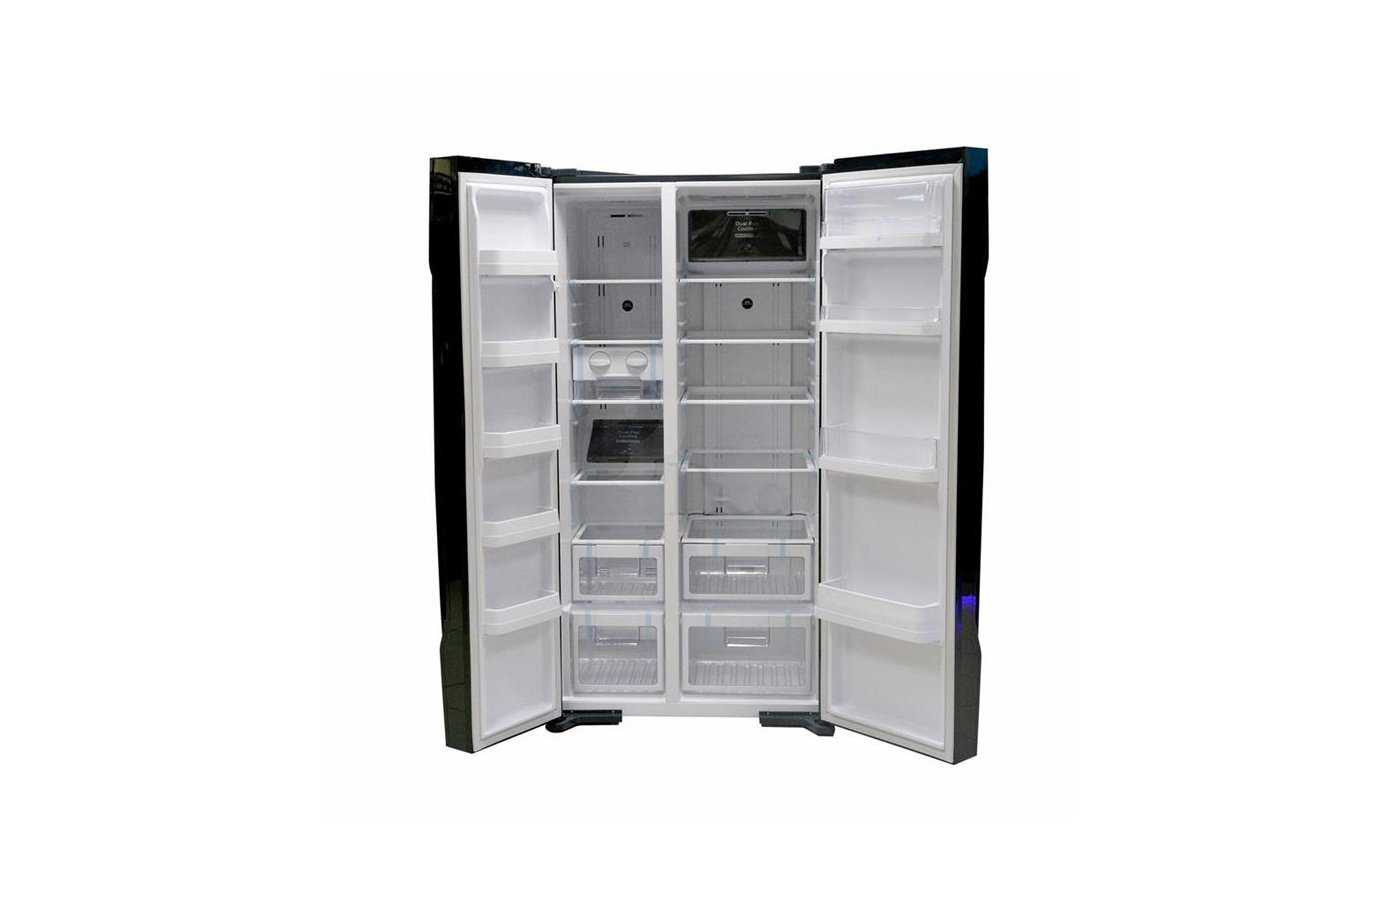 Холодильник (side-by-side) hitachi r-s 702 gpu2 gs купить от 168390 руб в екатеринбурге, сравнить цены, отзывы, видео обзоры и характеристики